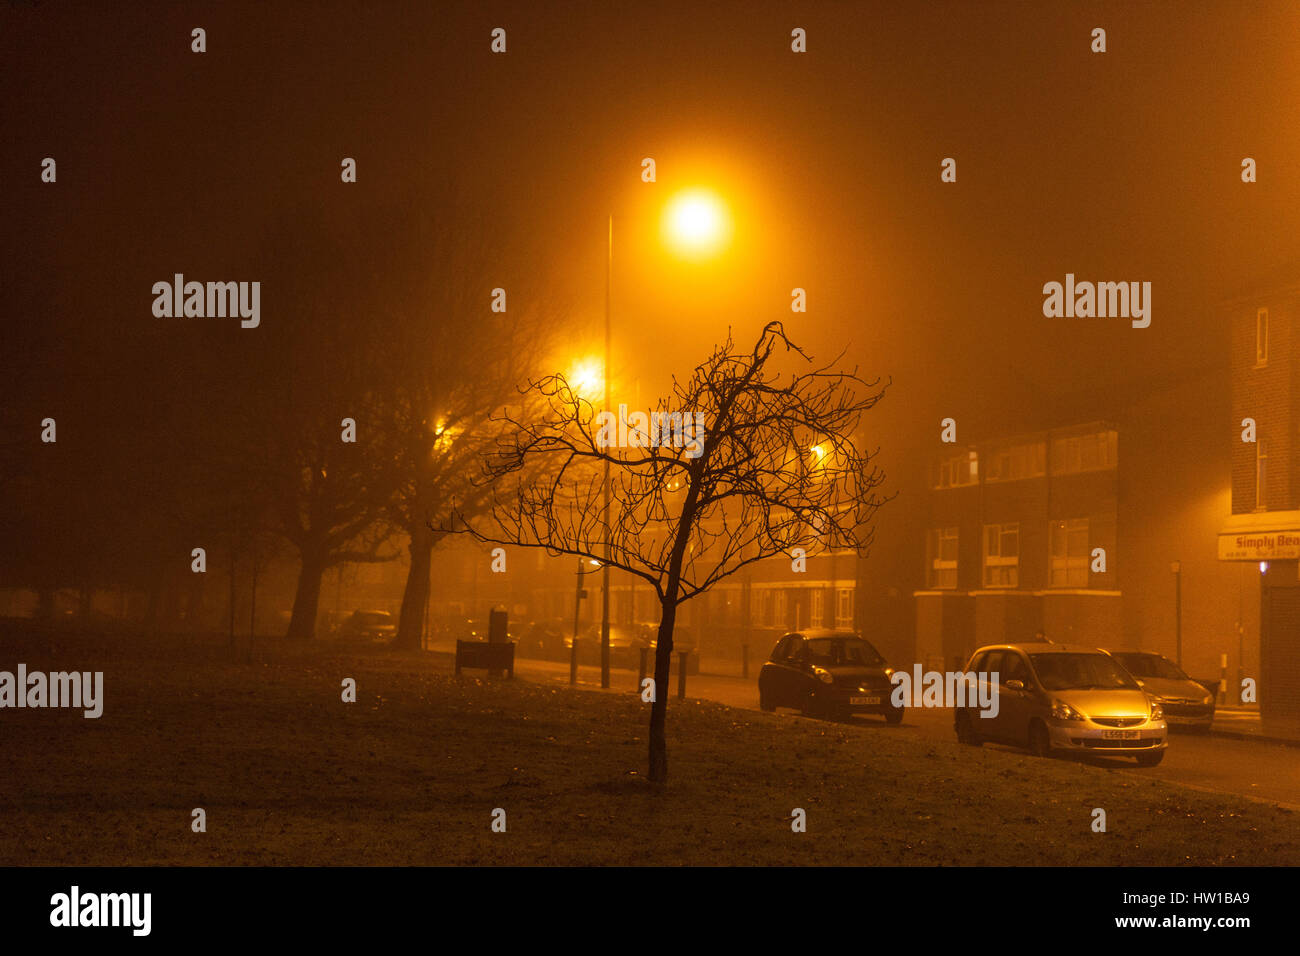 Amarillo-ámbar resplandor de vapor de sodio luces de calle en una noche brumosa, Queensbury, Harrow, noroeste de Londres, Inglaterra, HA8 5NP, REINO UNIDO. Foto de stock